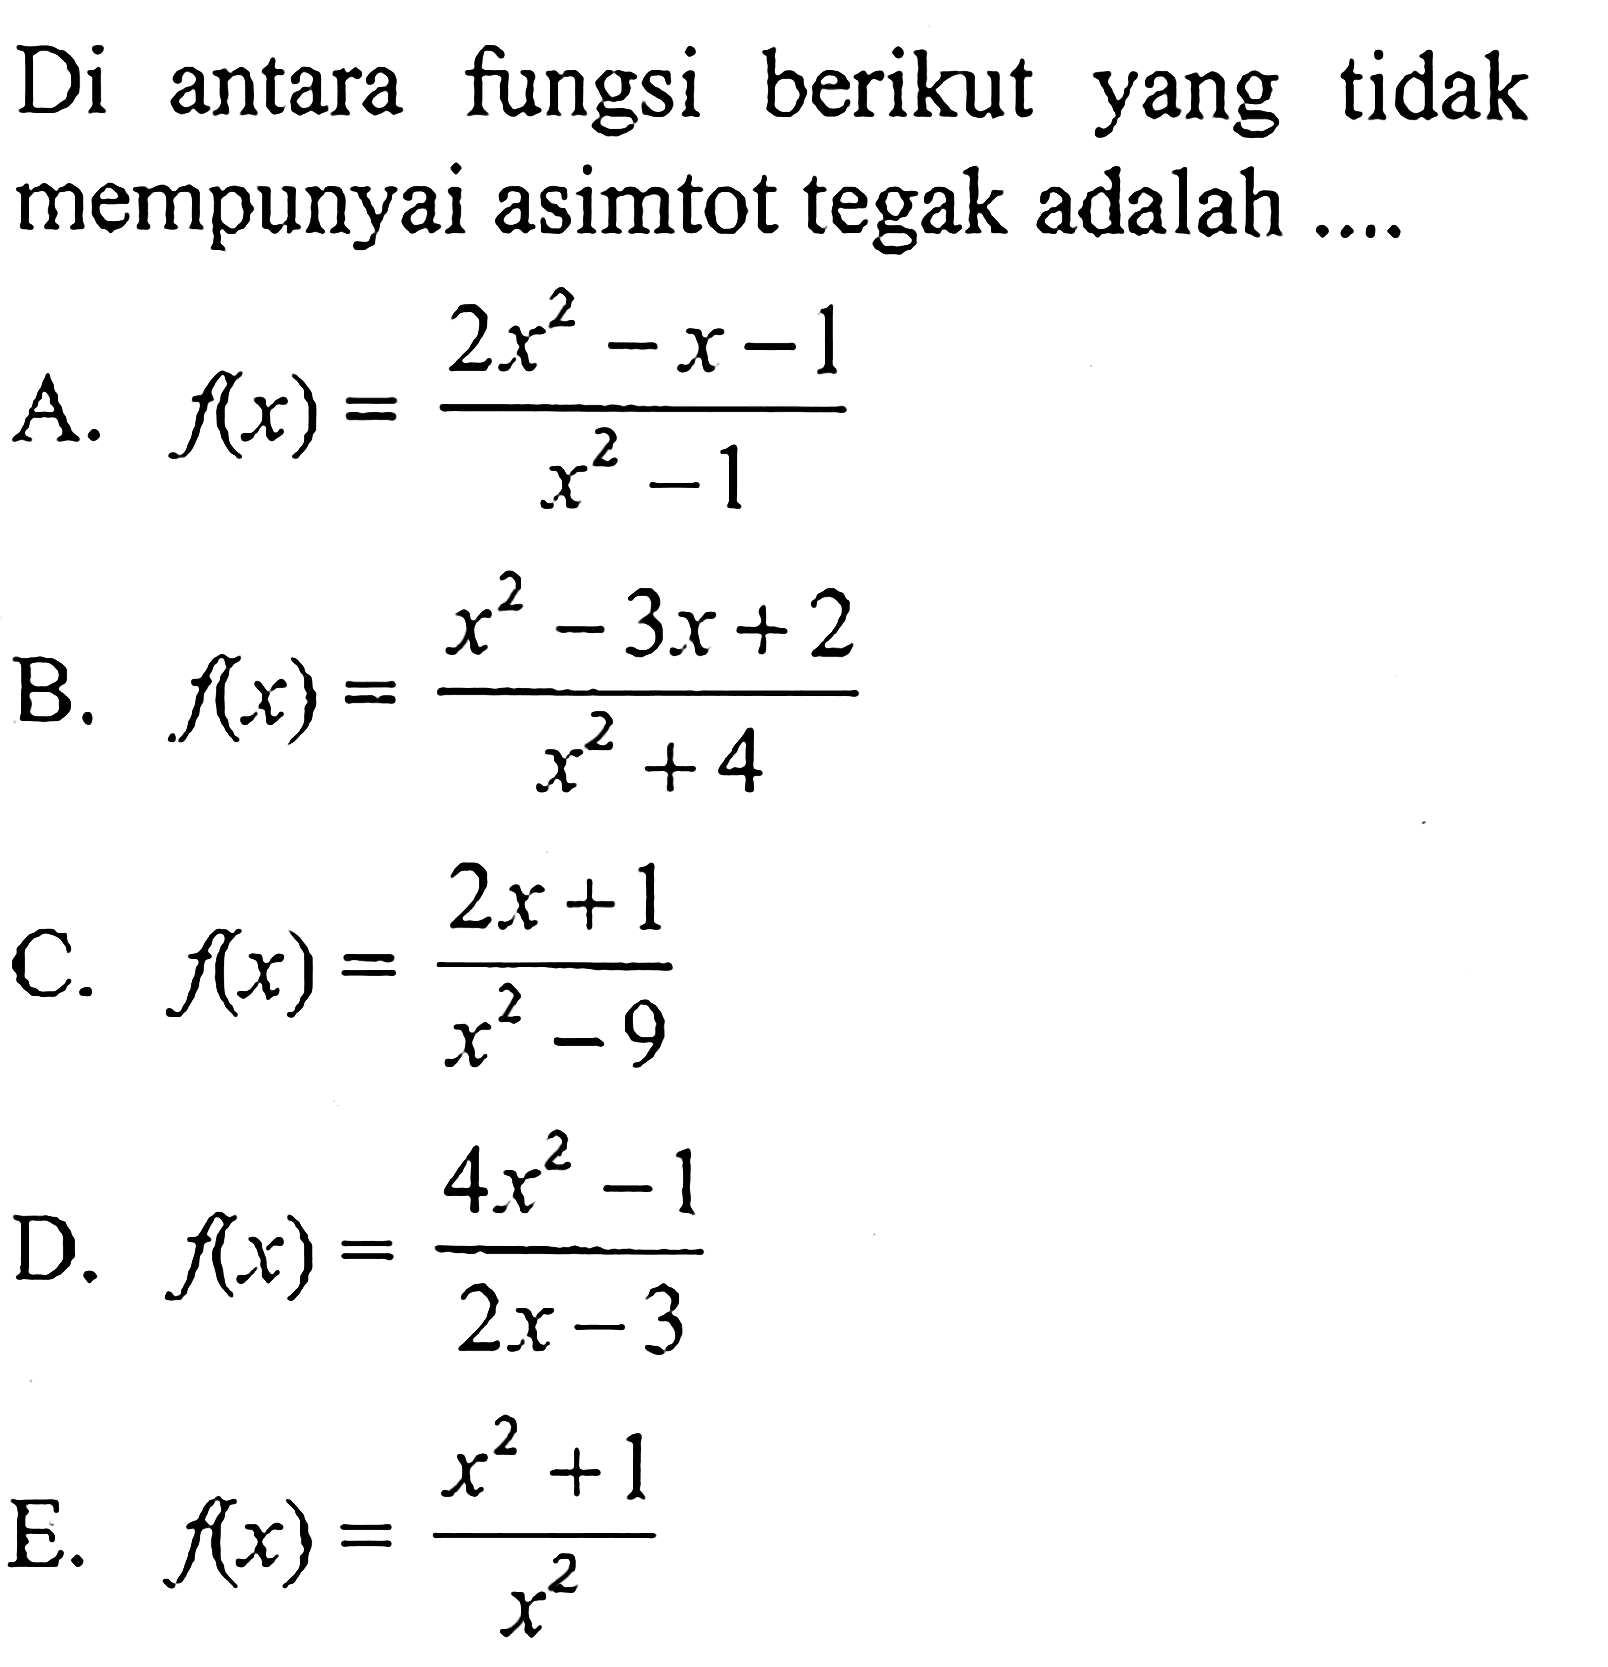 Di antara fungsi berikut yang tidak mempunyai asimtot tegak adalah .... A.  f(x)=(2x^2-x-1)/(x^2-1) B.  f(x)=(x^2-3x+2)/(x^2+4) C.  f(x)=(2x+1)/(x^2-9) D.  f(x)=(4x^2-1)/(2x-3) E.  f(x)=(x^2+1)/x^2 